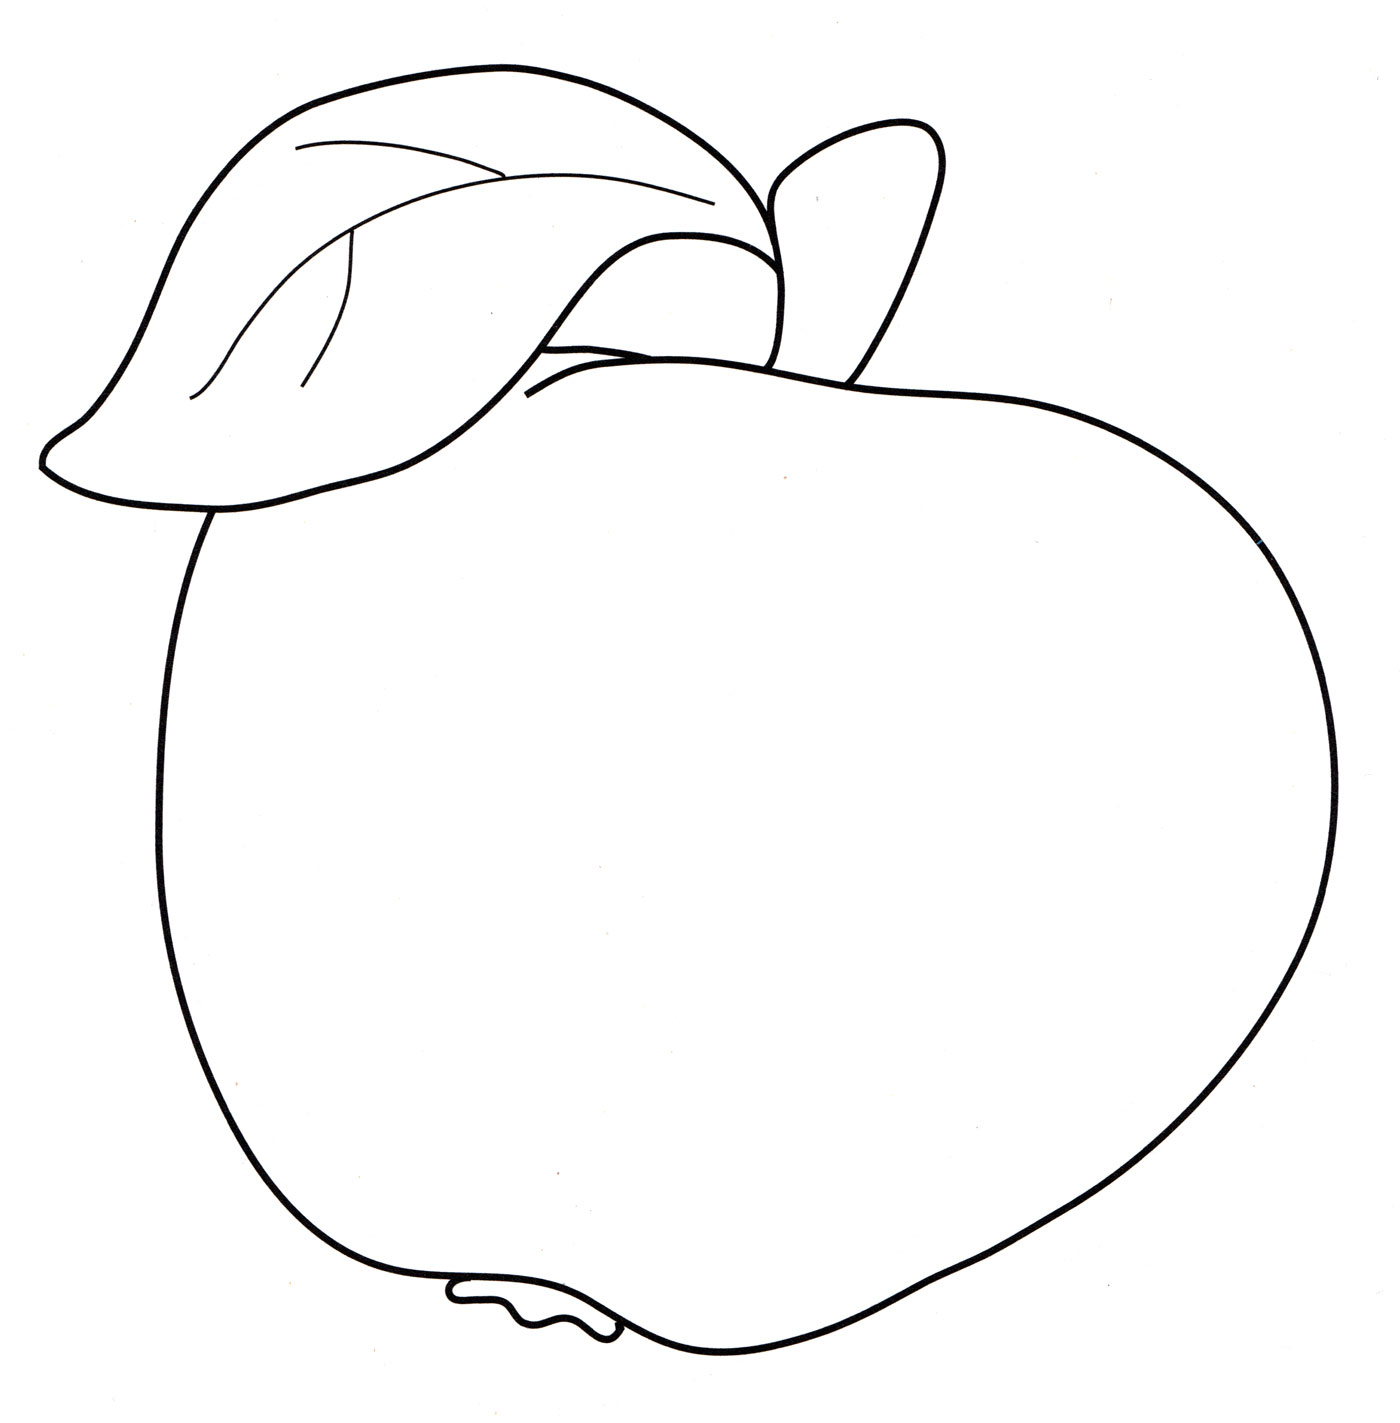 Раскраска яблоко для детей 2-3 лет